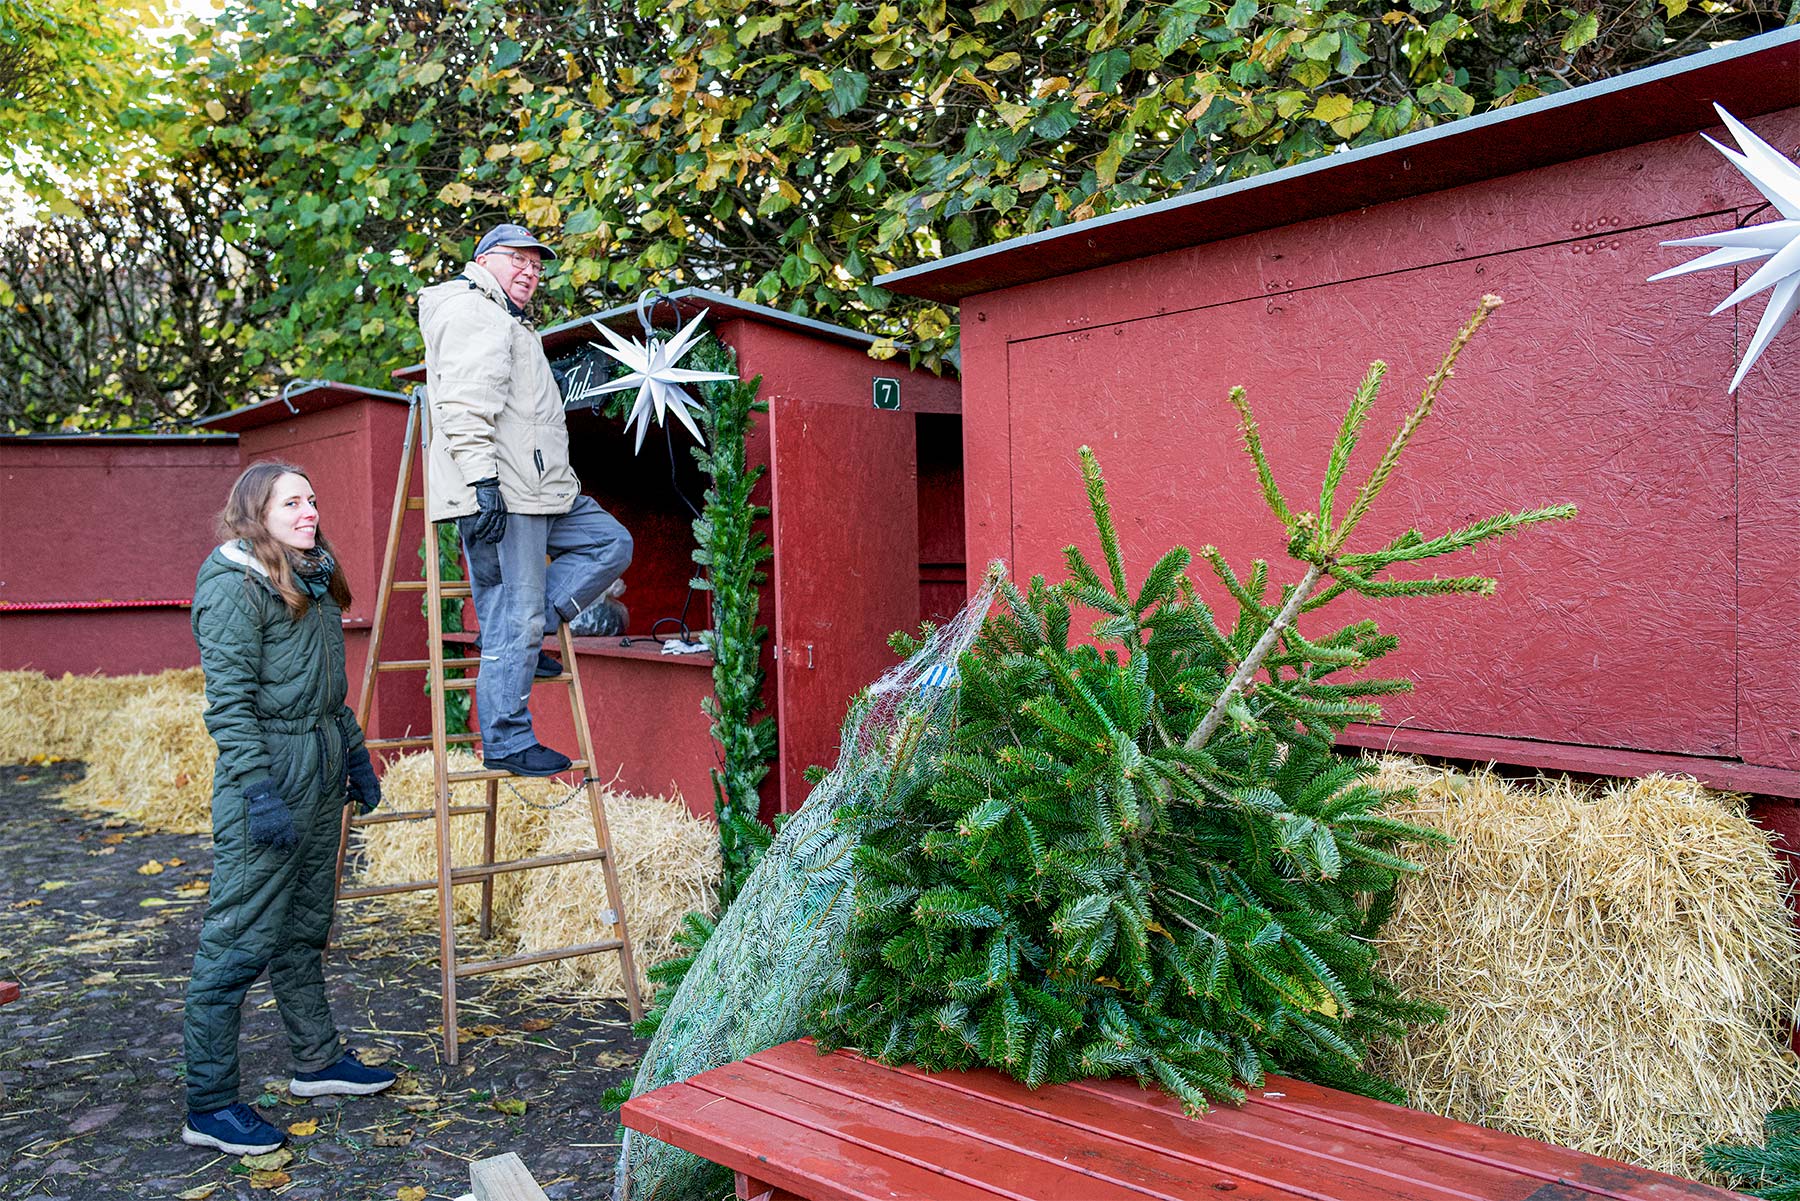 På Badstuevælen arbejdes der for at gøre juleboderne klar til julemarkedet. Foto: TorbenStender.